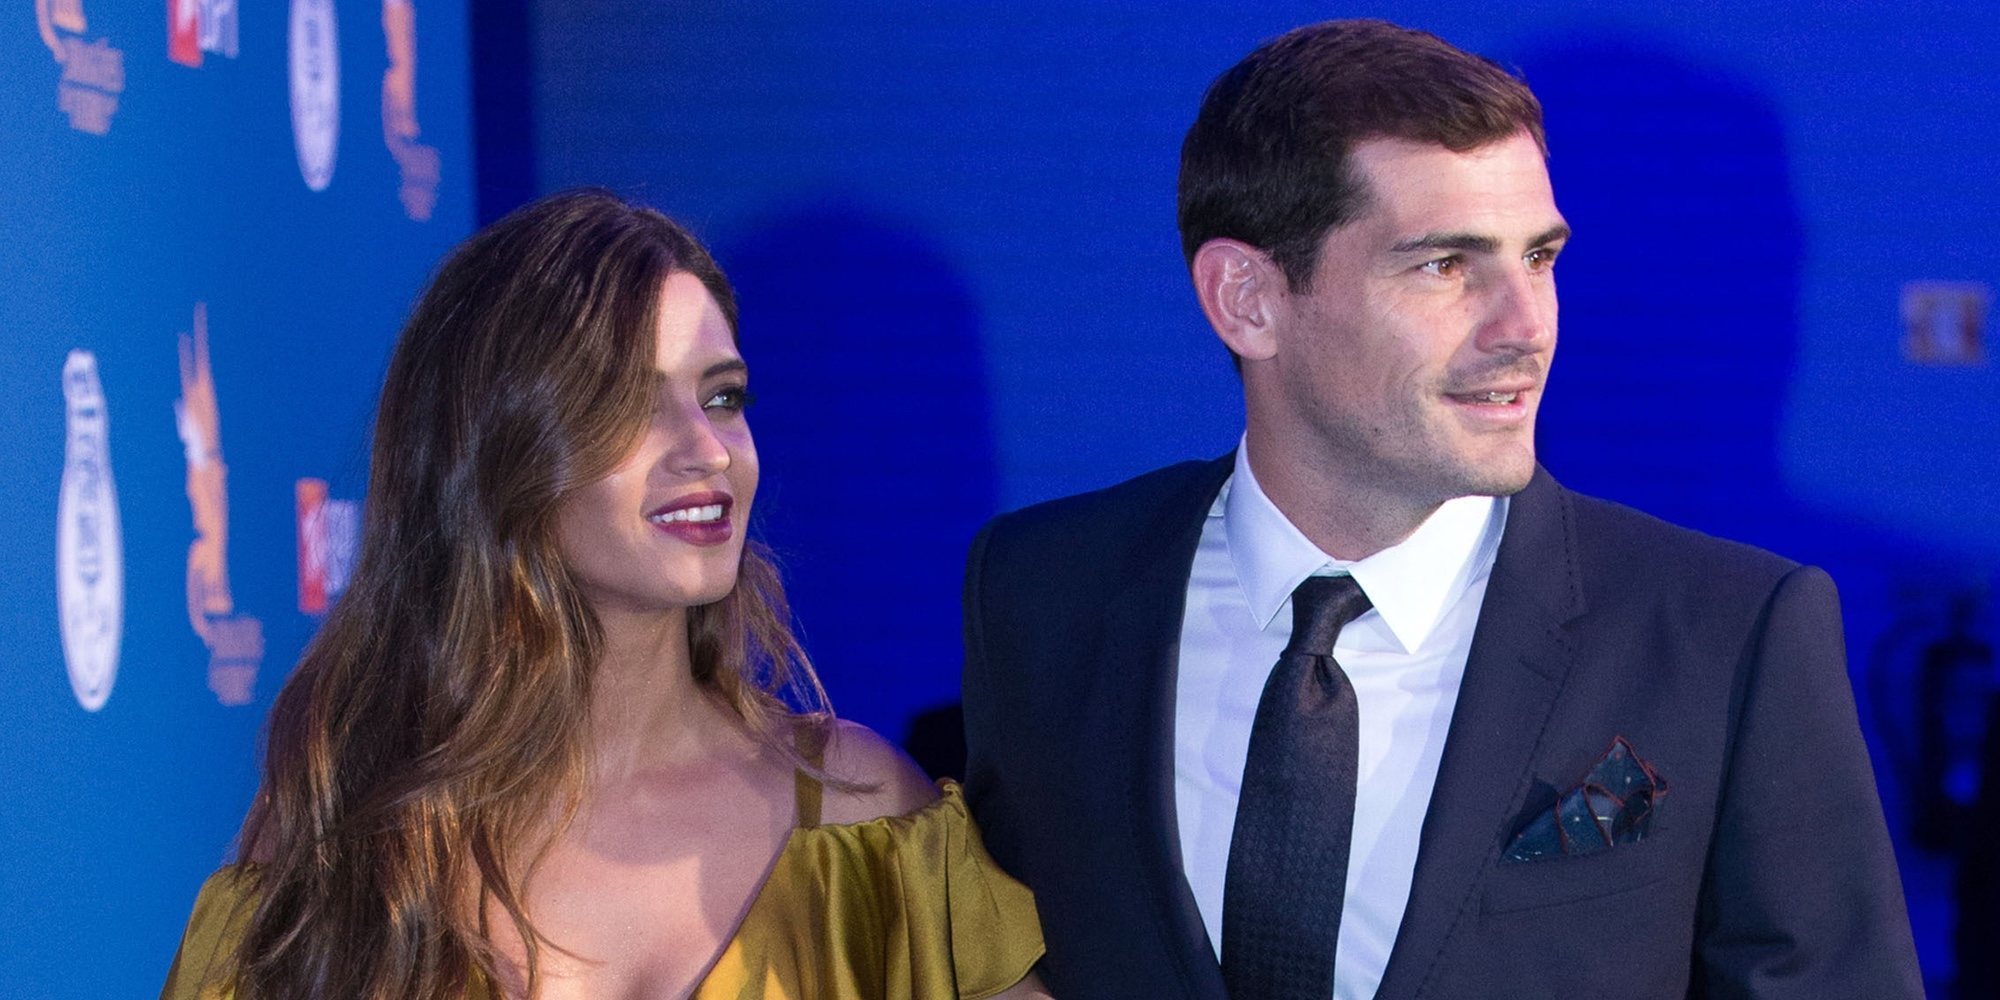 Iker Casillas, tachado de celoso por pedir a Sara Carbonero que enseñe menos muslo en una foto